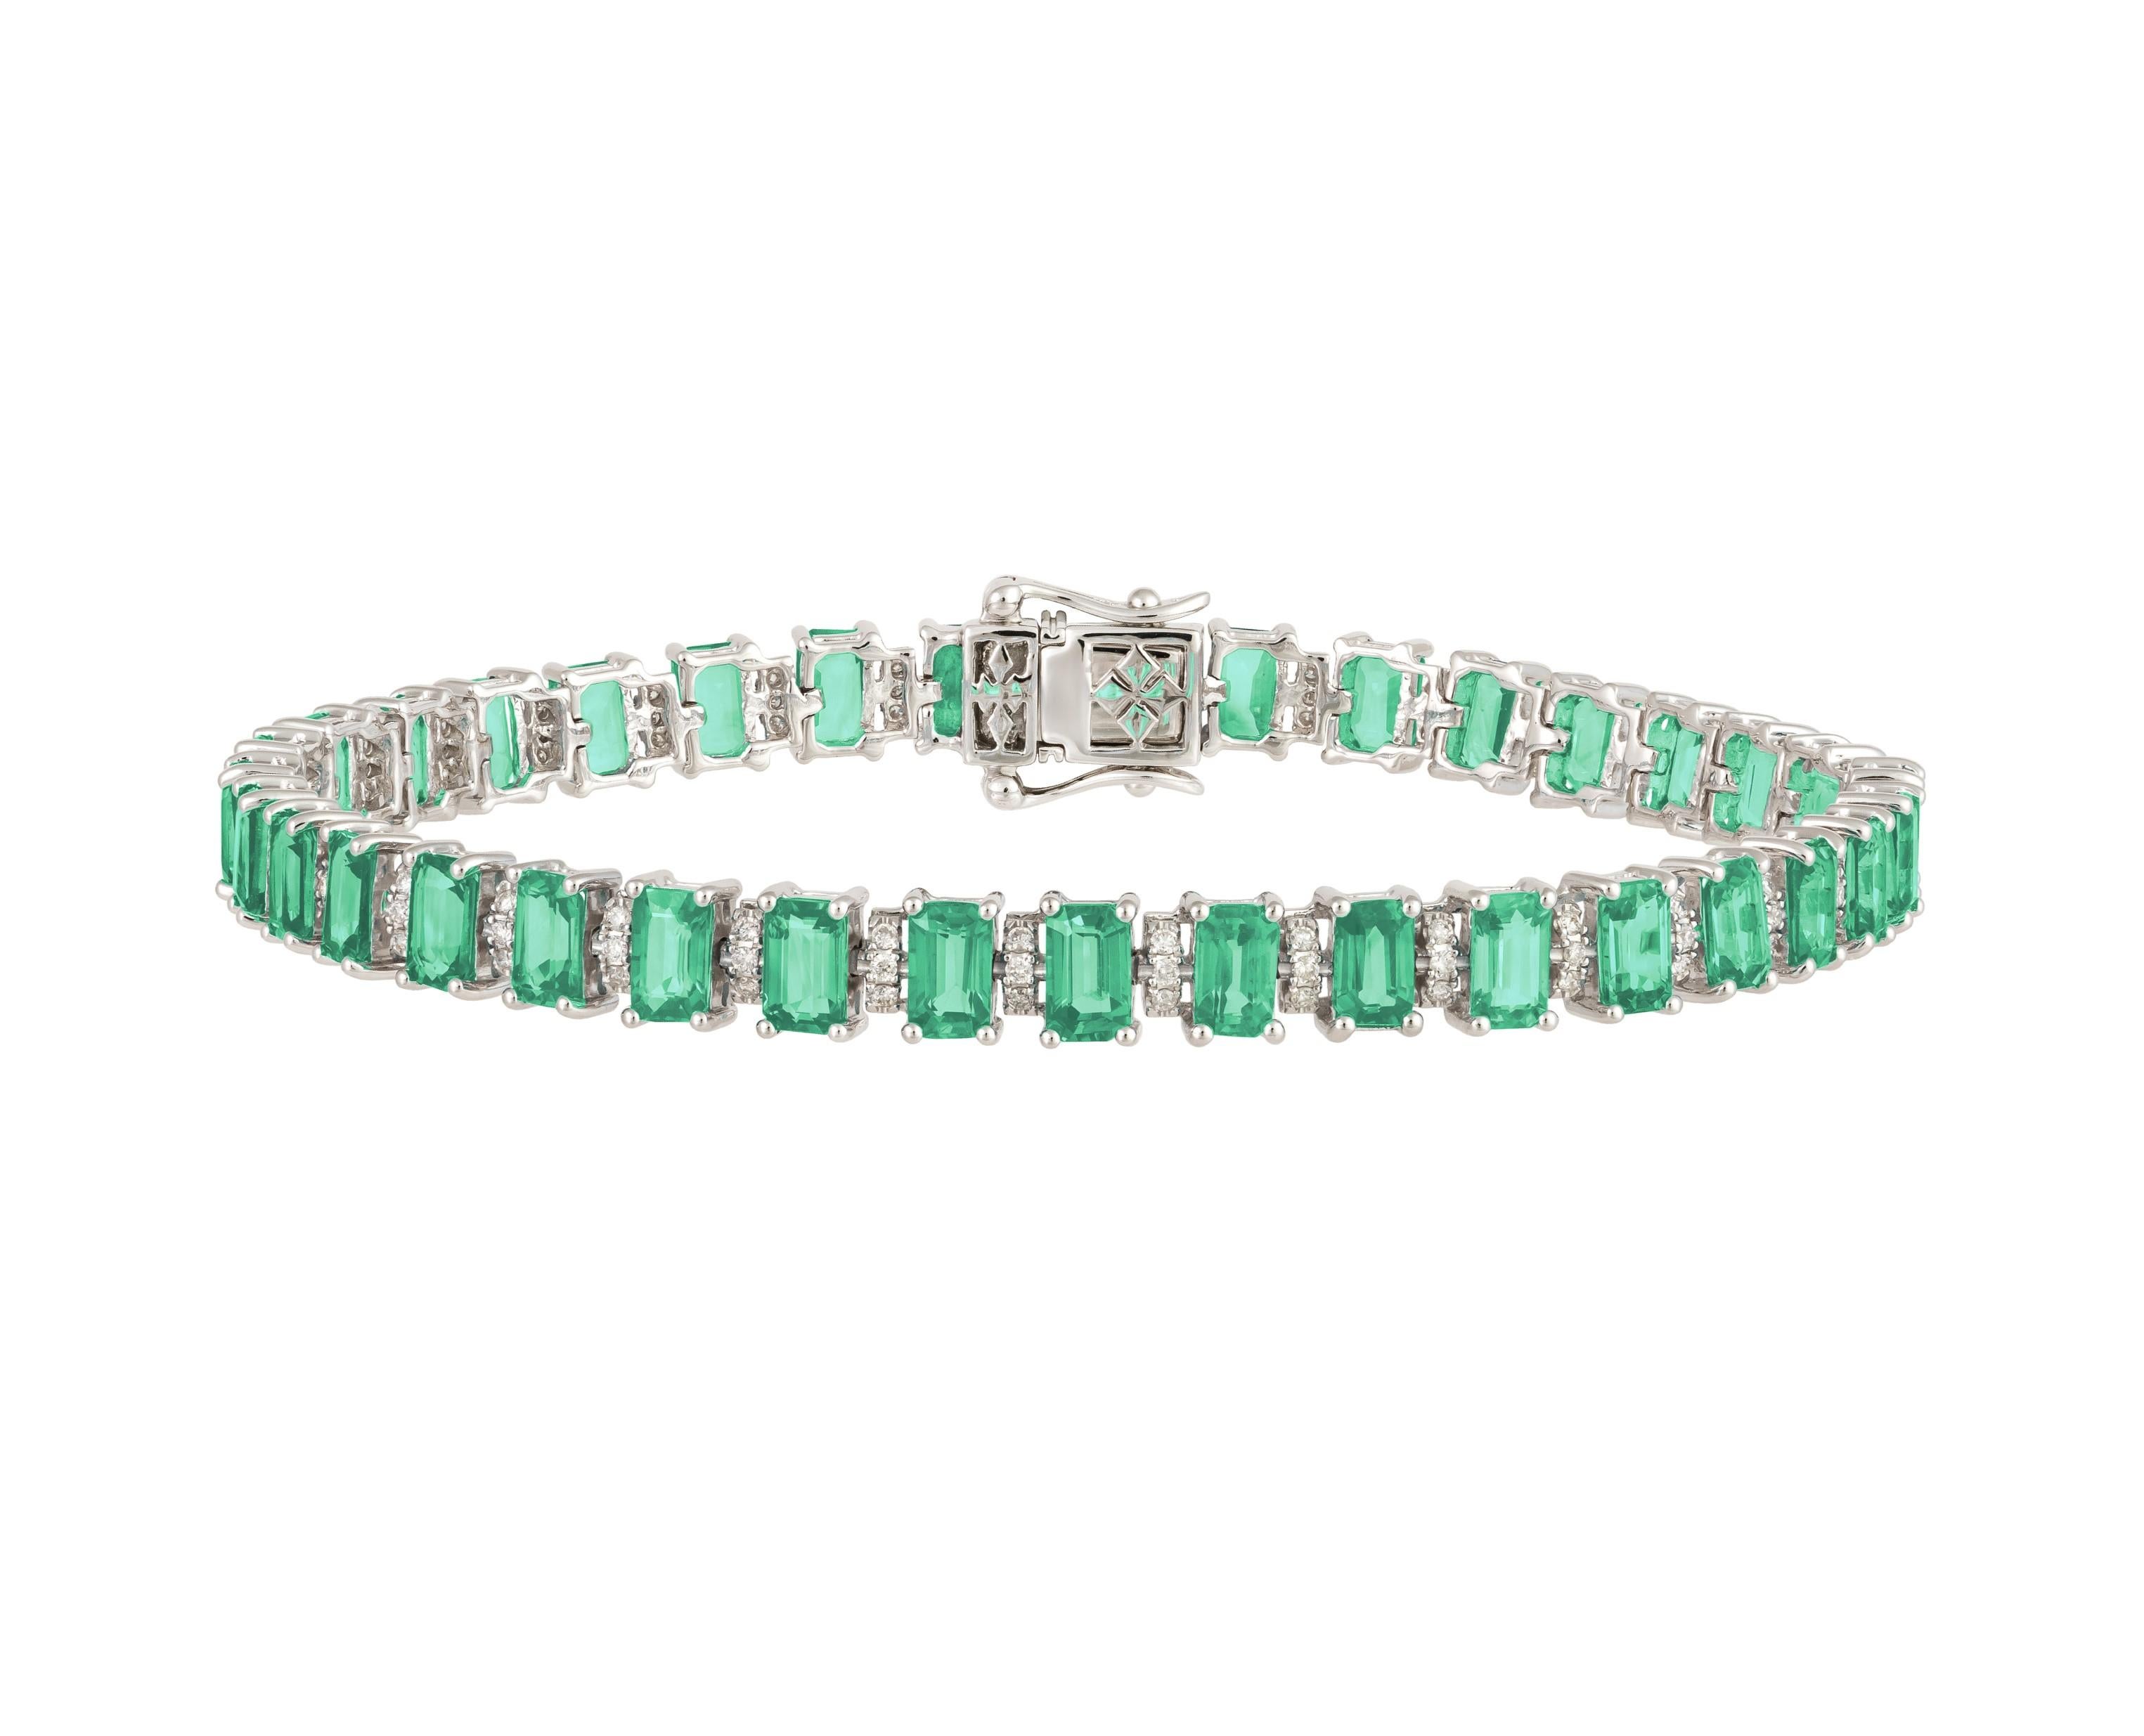 L'article suivant que nous vous proposons est un rare et important bracelet en or 18 carats, scintillant et étincelant, composé d'une émeraude verte et d'un diamant rond de forme fantaisie. Le bracelet contient plus de 10CTS de belles émeraudes